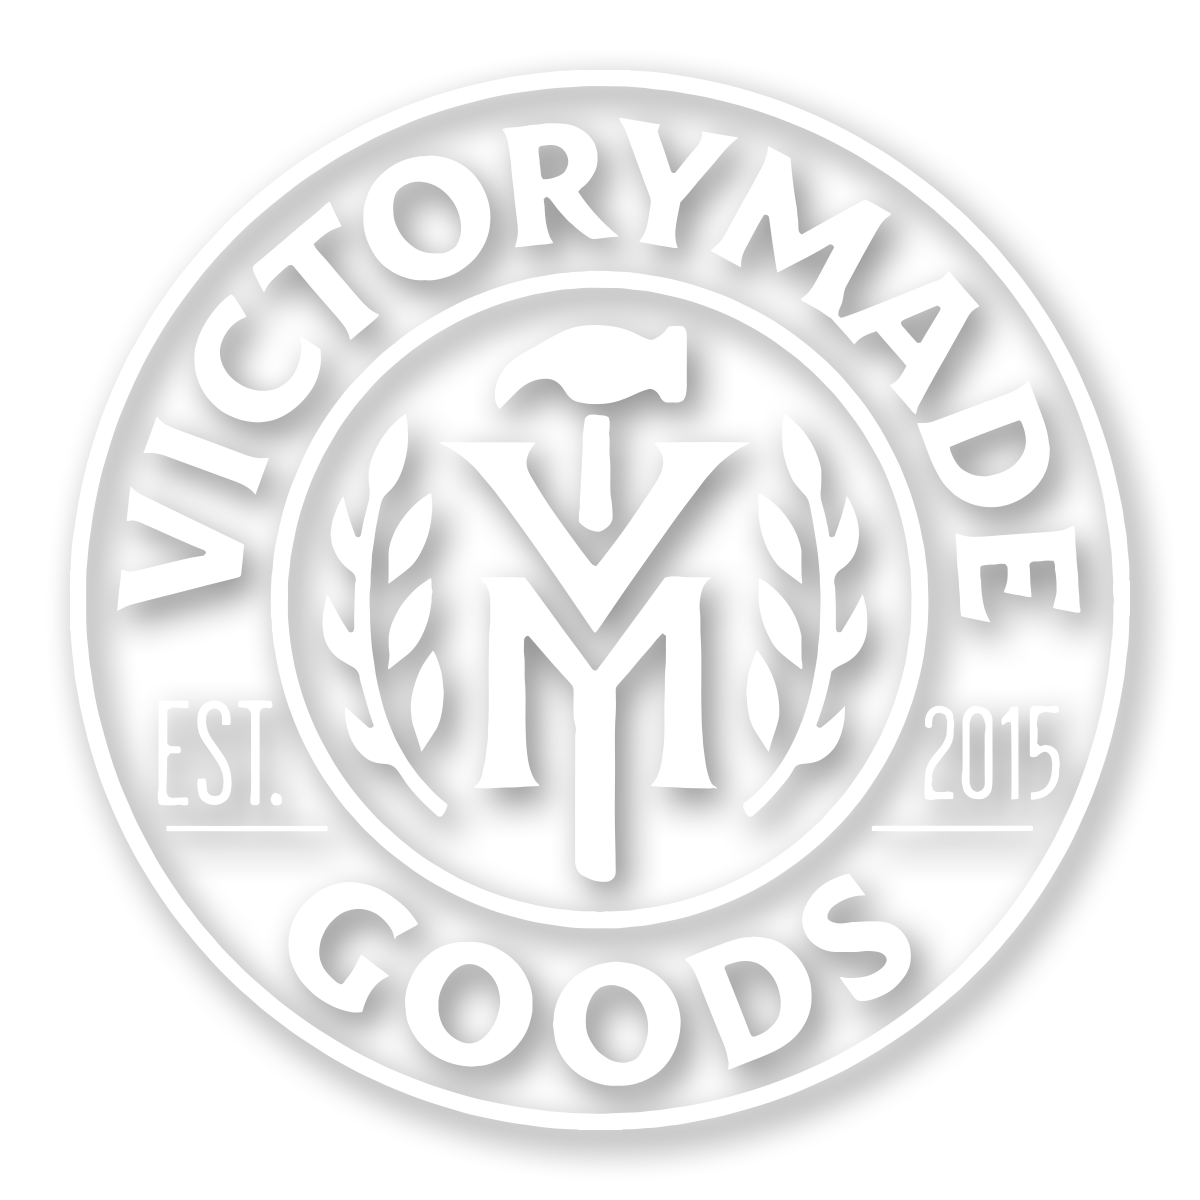 Victorymade Badge 2.0 Die Cut Sticker White